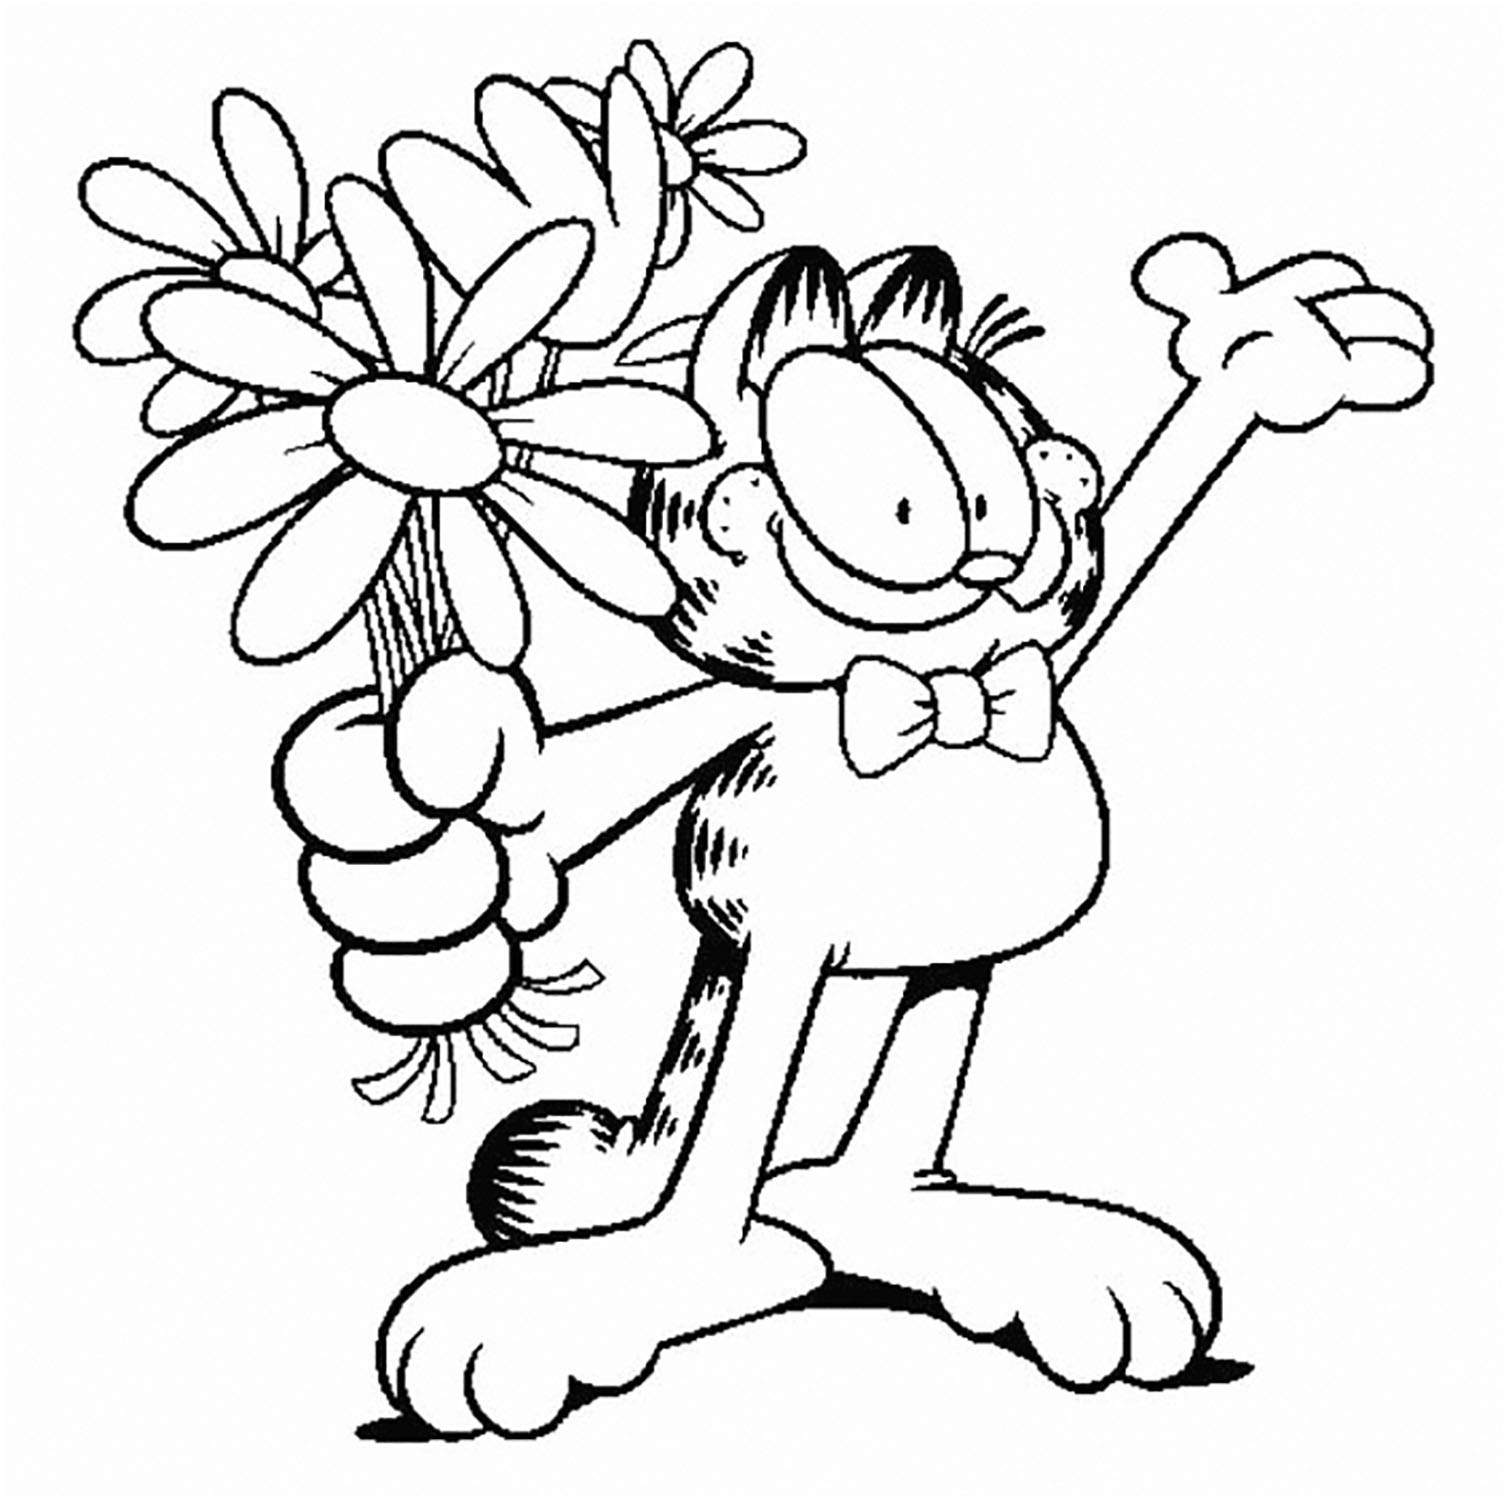 Dessin de Garfield gratuit à télécharger et colorier - Coloriage